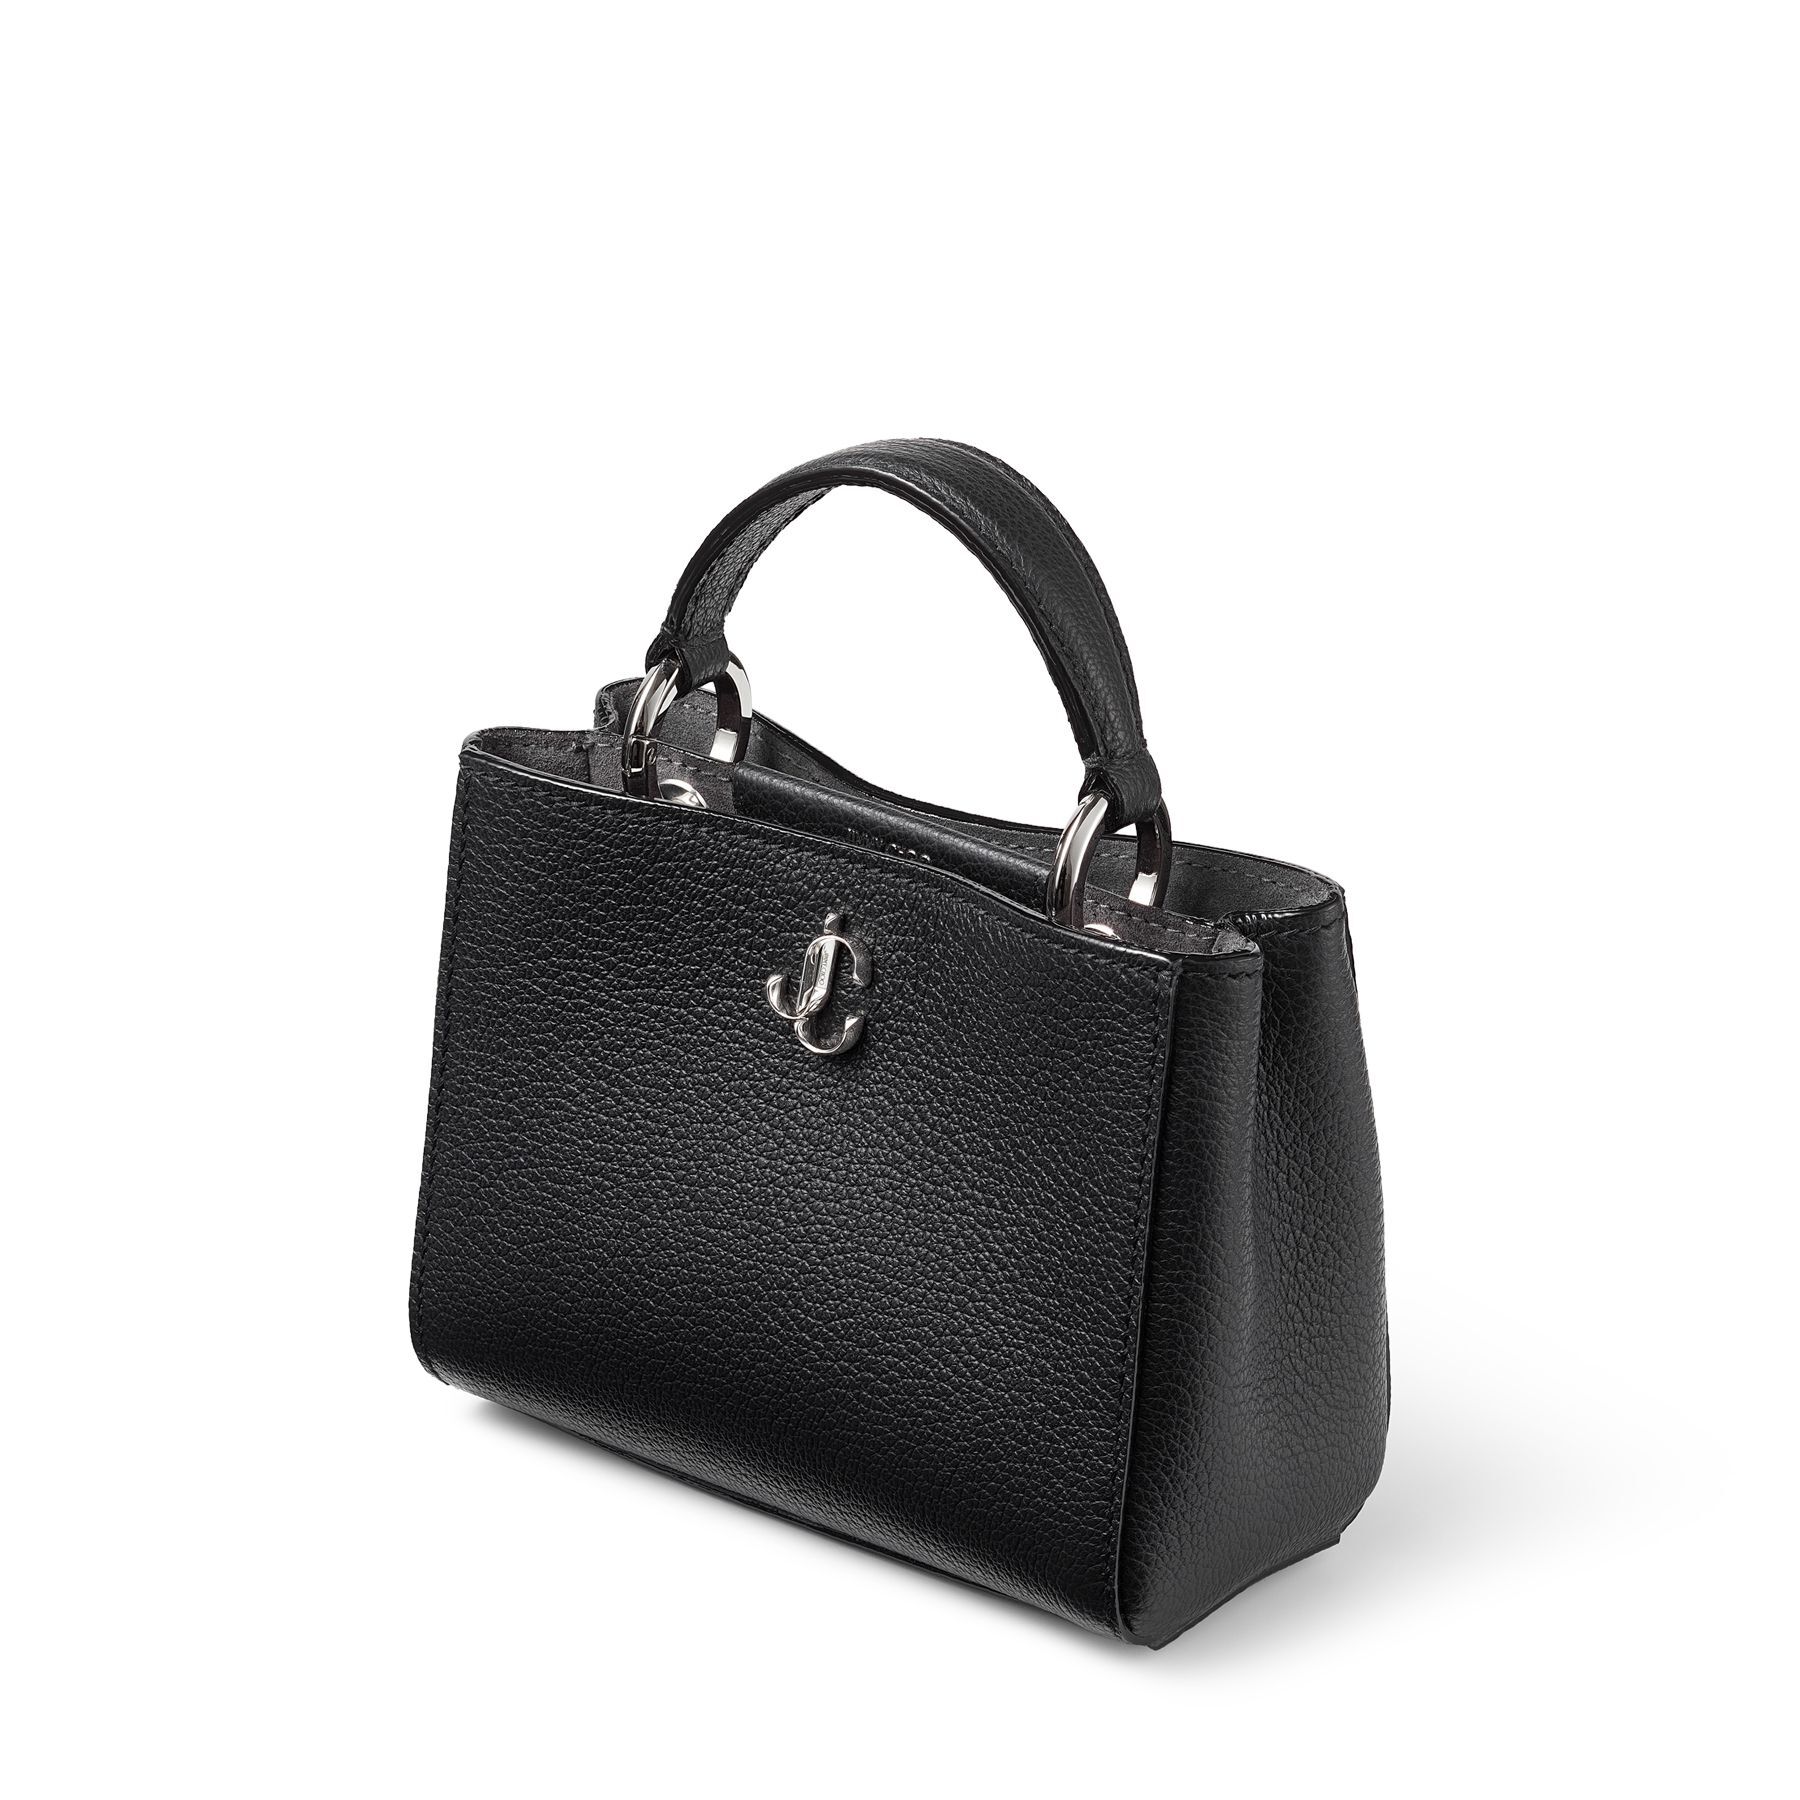 Black City Grainy Calf Leather Mini Handbag | VARENNE TOPHNDL MINI 